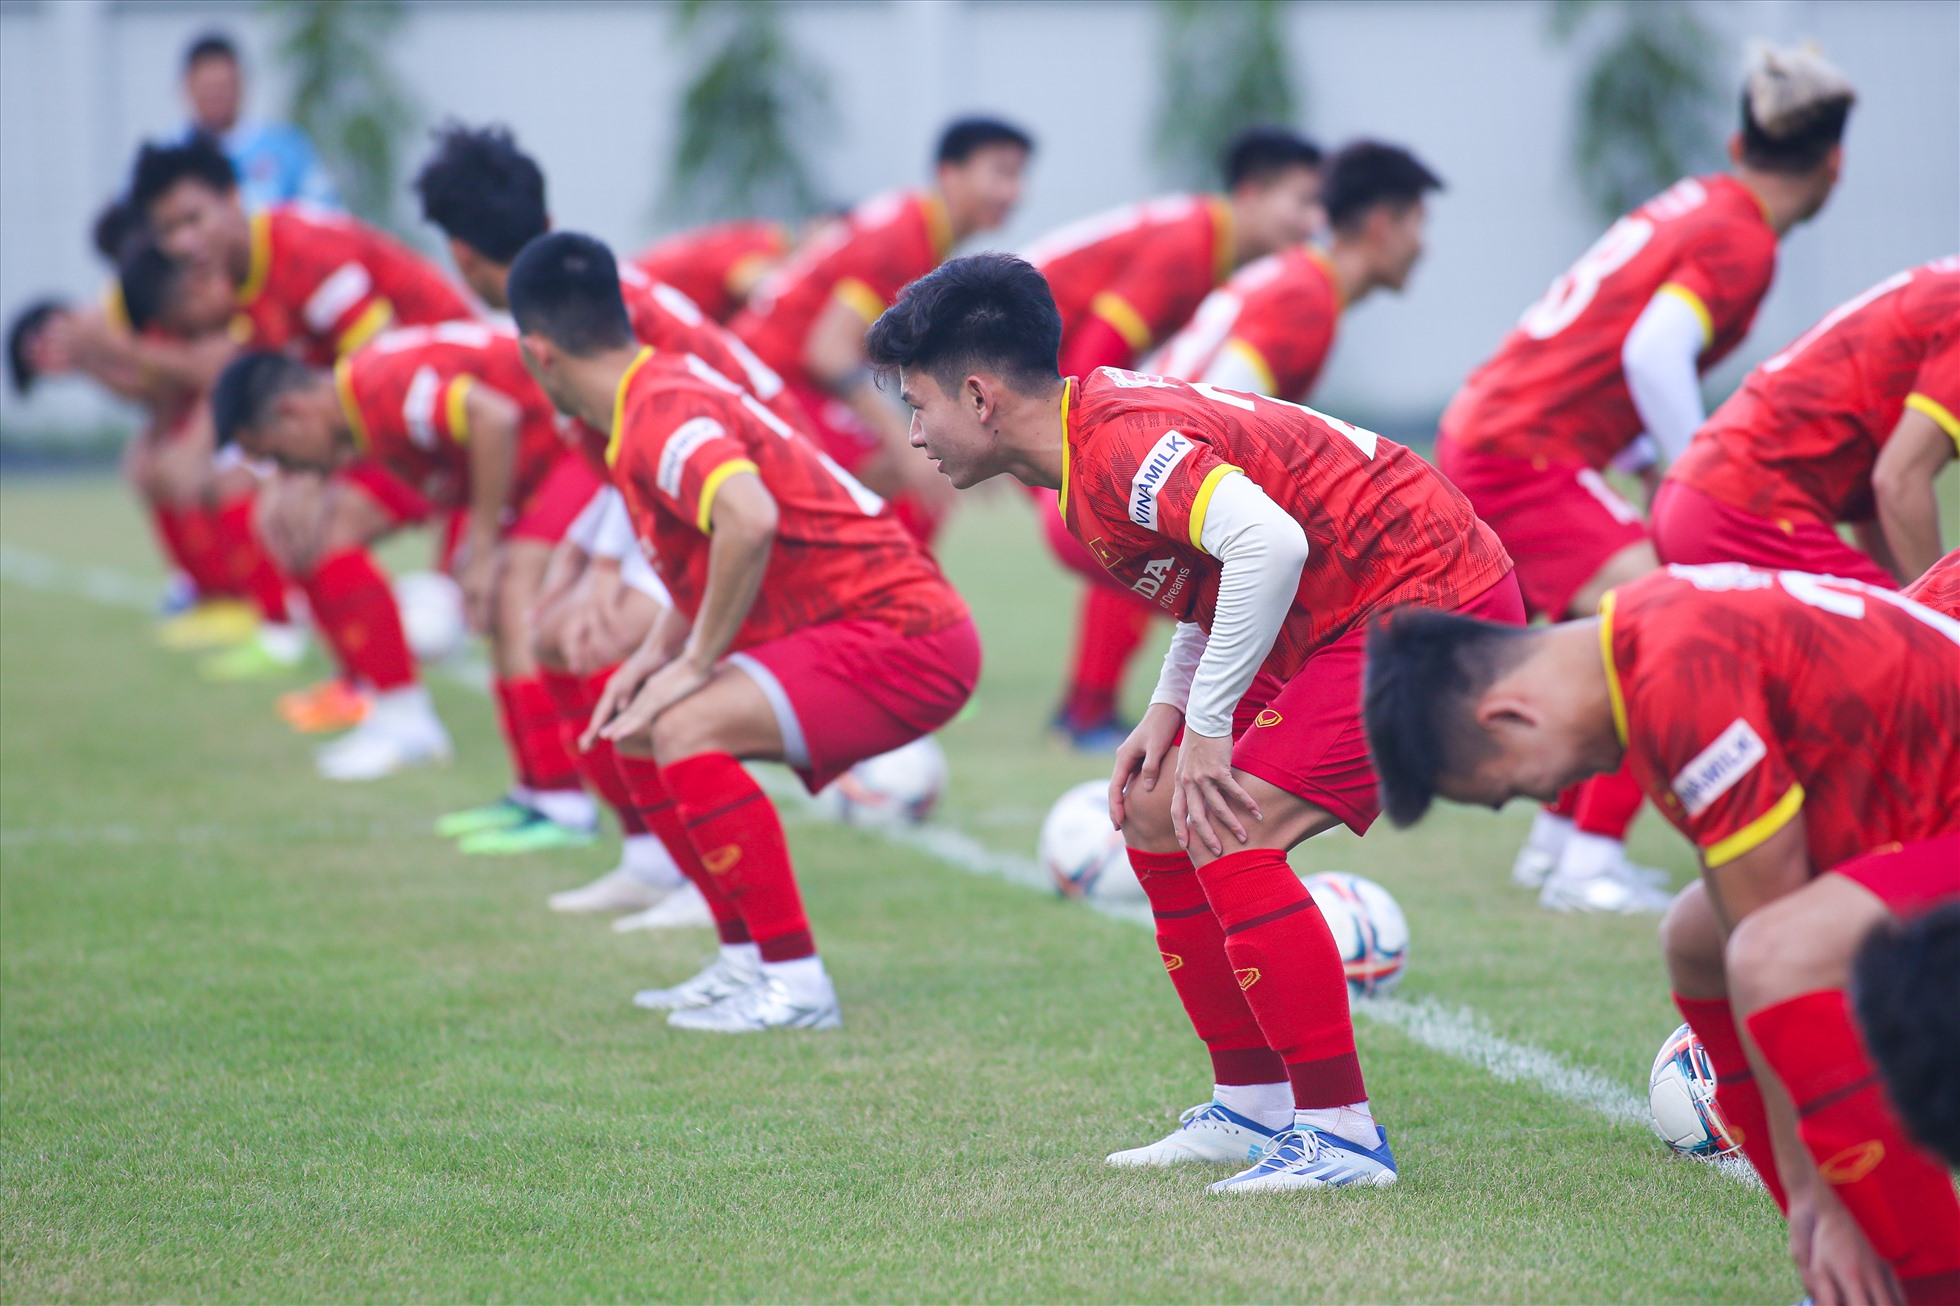 Chiều 18.9, đội tuyển Việt Nam có buổi tập tại sân bóng đá Quận 7, đại bản doanh của câu lạc bộ TPHCM. Đây là buổi tập thứ 3 của đội sau khi hội quân từ hôm qua (18.9).